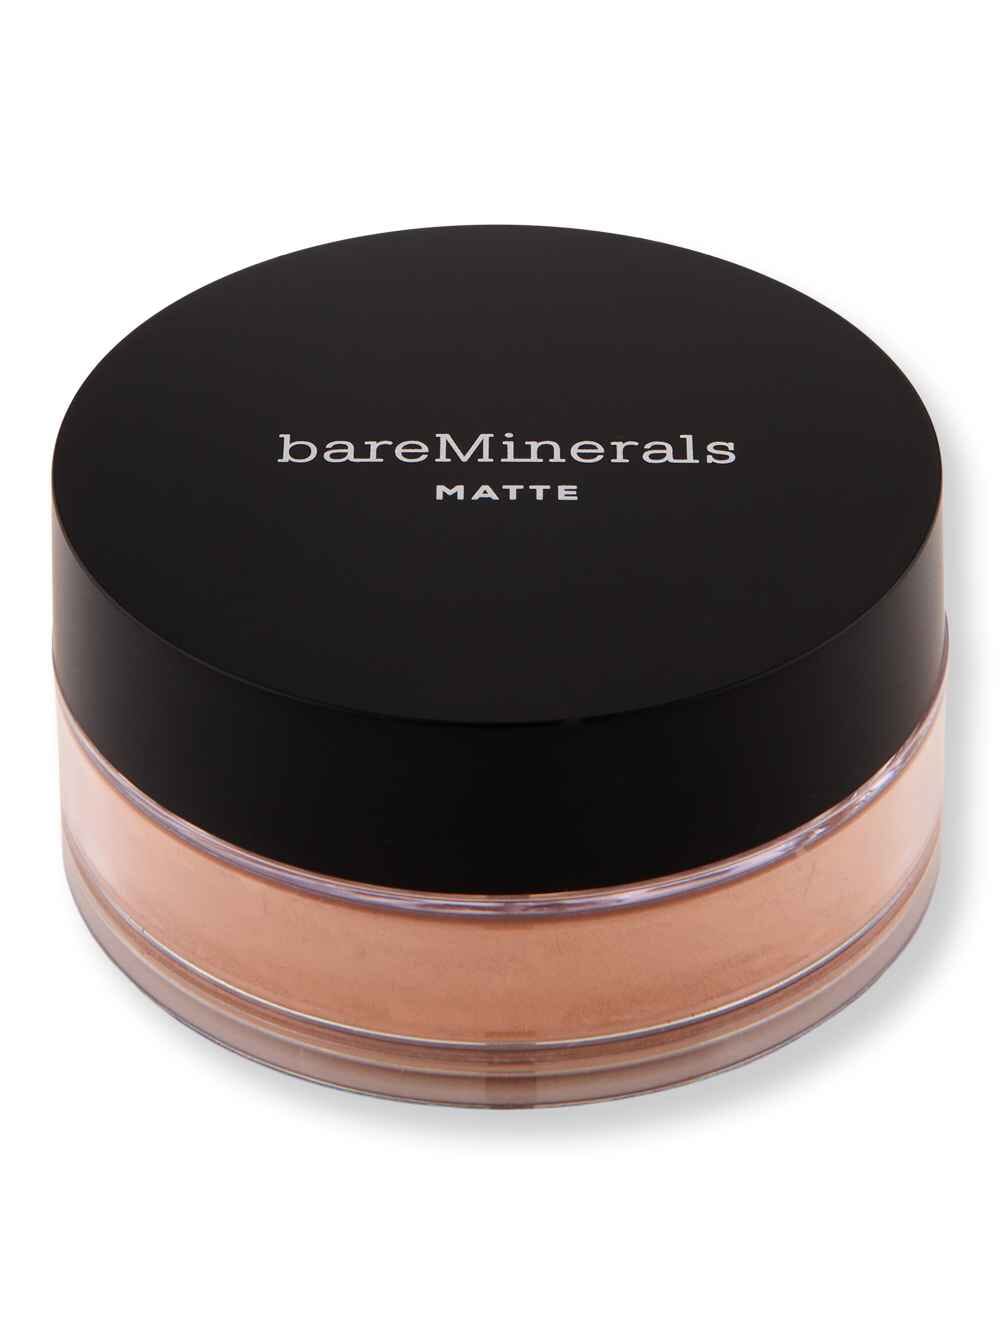 Bareminerals Bareminerals Matte Loose Powder Foundation SPF 15 Medium Dark 23 0.21 oz6 g Tinted Moisturizers & Foundations 